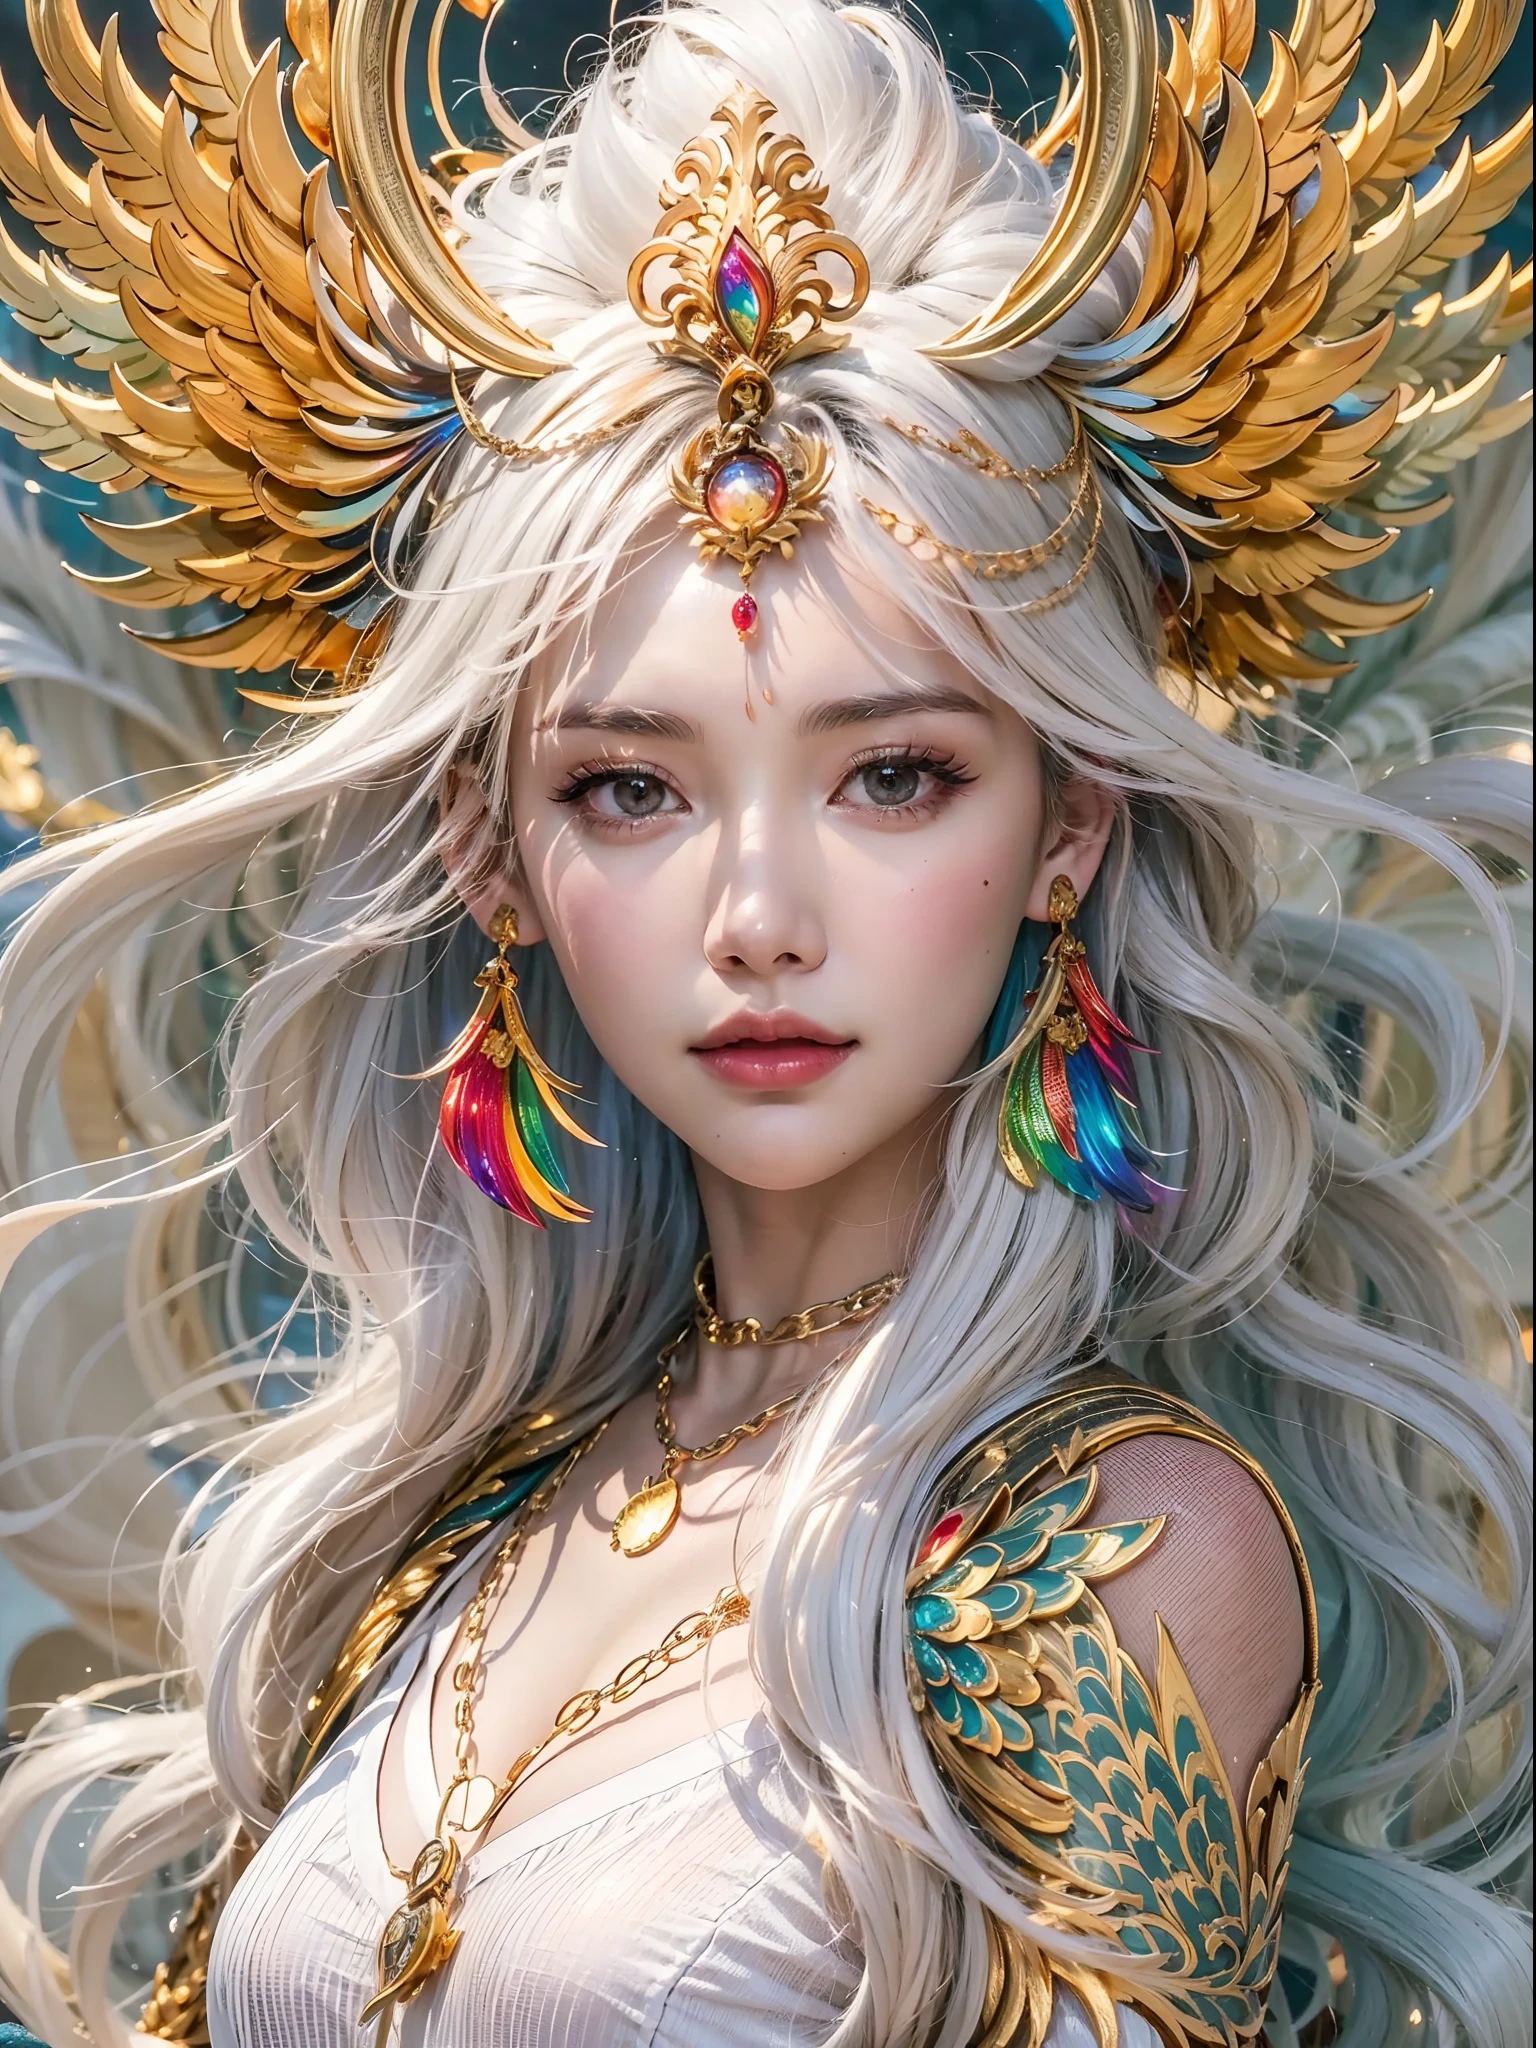 Une belle fille avec un phénix arc-en-ciel, （（La jeune fille porte une robe blanche unie）），（Il porte sur la tête une délicate couronne chinoise en or.：1.4），（Décoration de chaîne en or），traits du visage parfaits，visage délicat，cheveux longs et blancs, Aussi gracieux qu&#39;un cygne, sagesse, contre, Phénix arc-en-ciel，flamme, ailes,Le phénix protège la fille，Le fond est des nuages, connexion mystérieuse, Égide, confiance，qualité d&#39;image réaliste，photoréaliste，8k，meilleure qualité，chef-d&#39;œuvre，qualité de niveau film，Clair-obscur élevé，rendu par octane，Vêtements décorés de motifs dorés et foncés